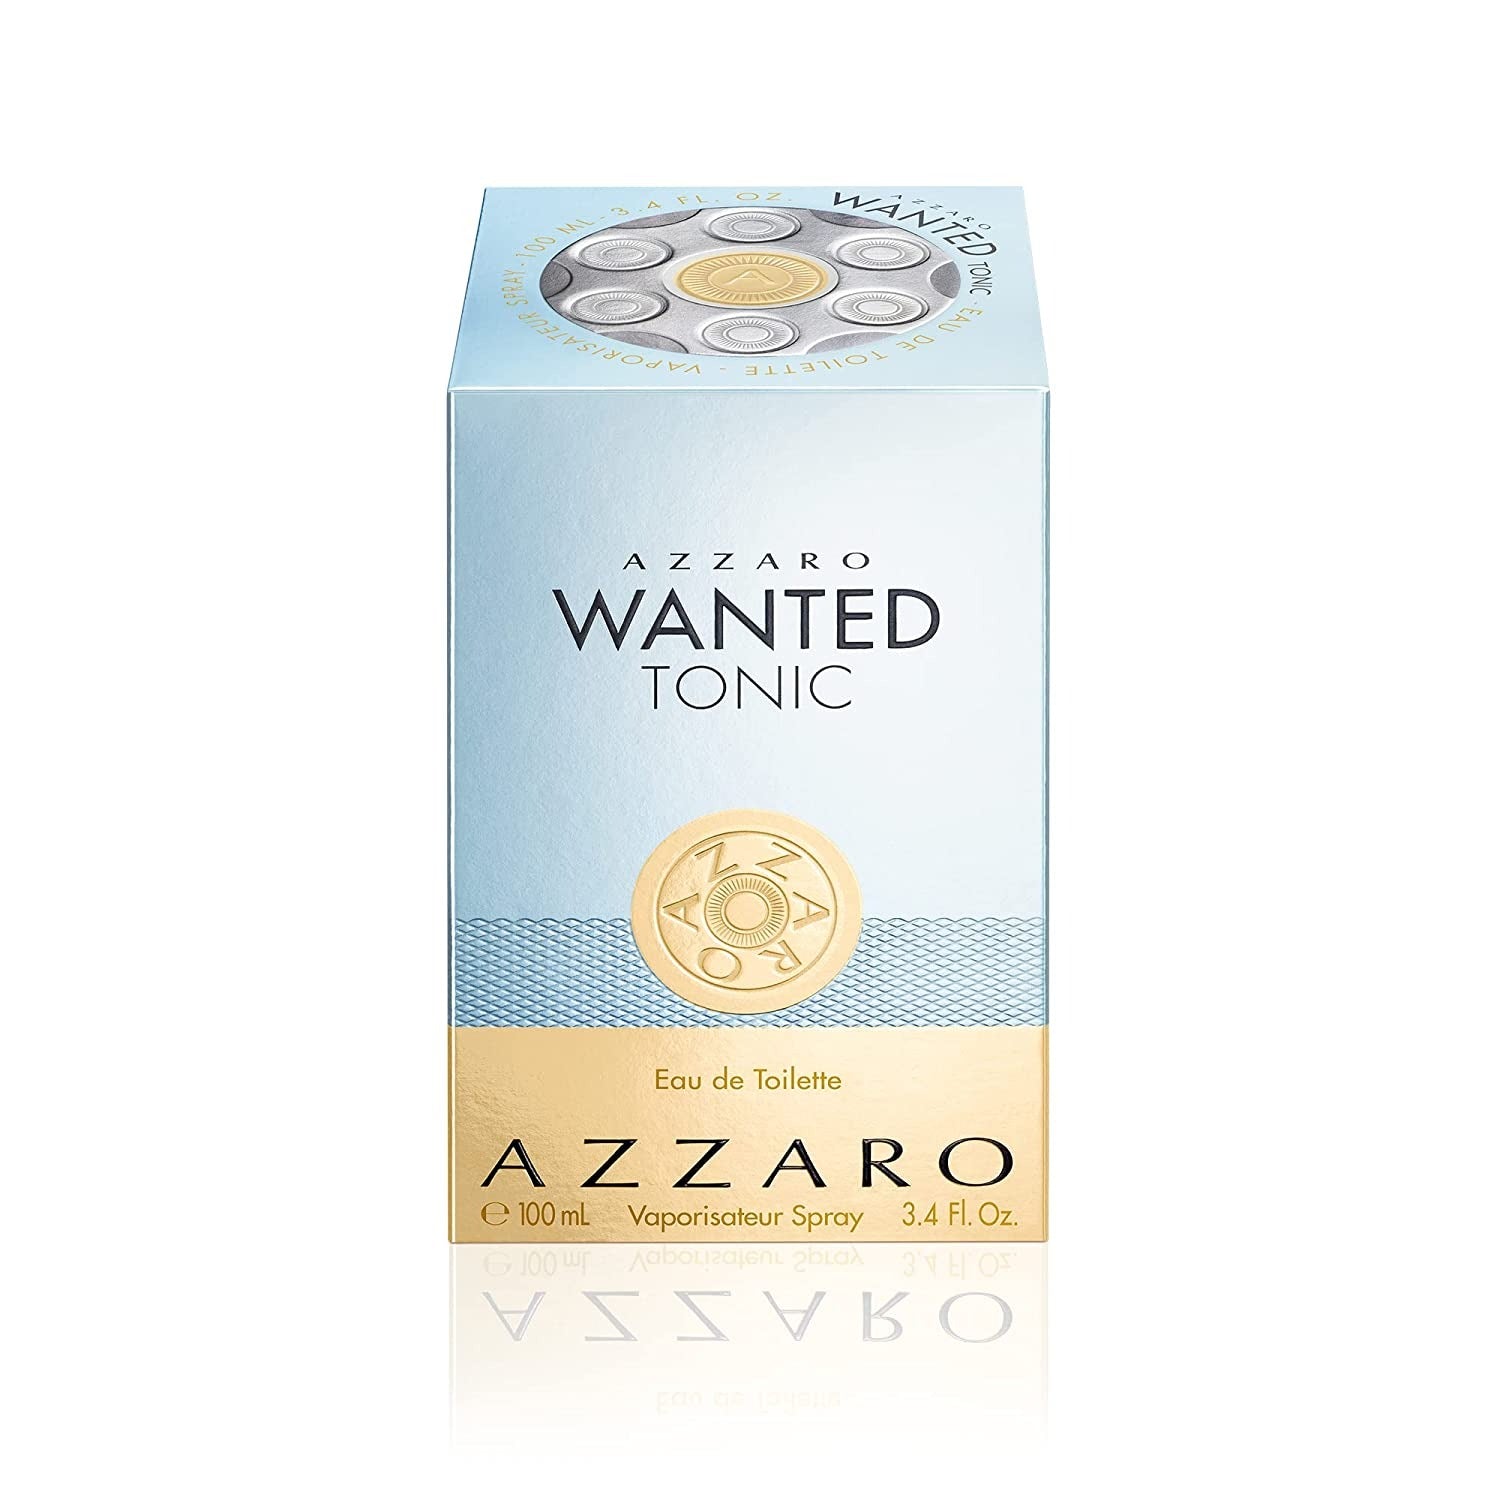 Azzaro Wanted Tonic by Azzaro 3.4 oz EDT Spray for Men